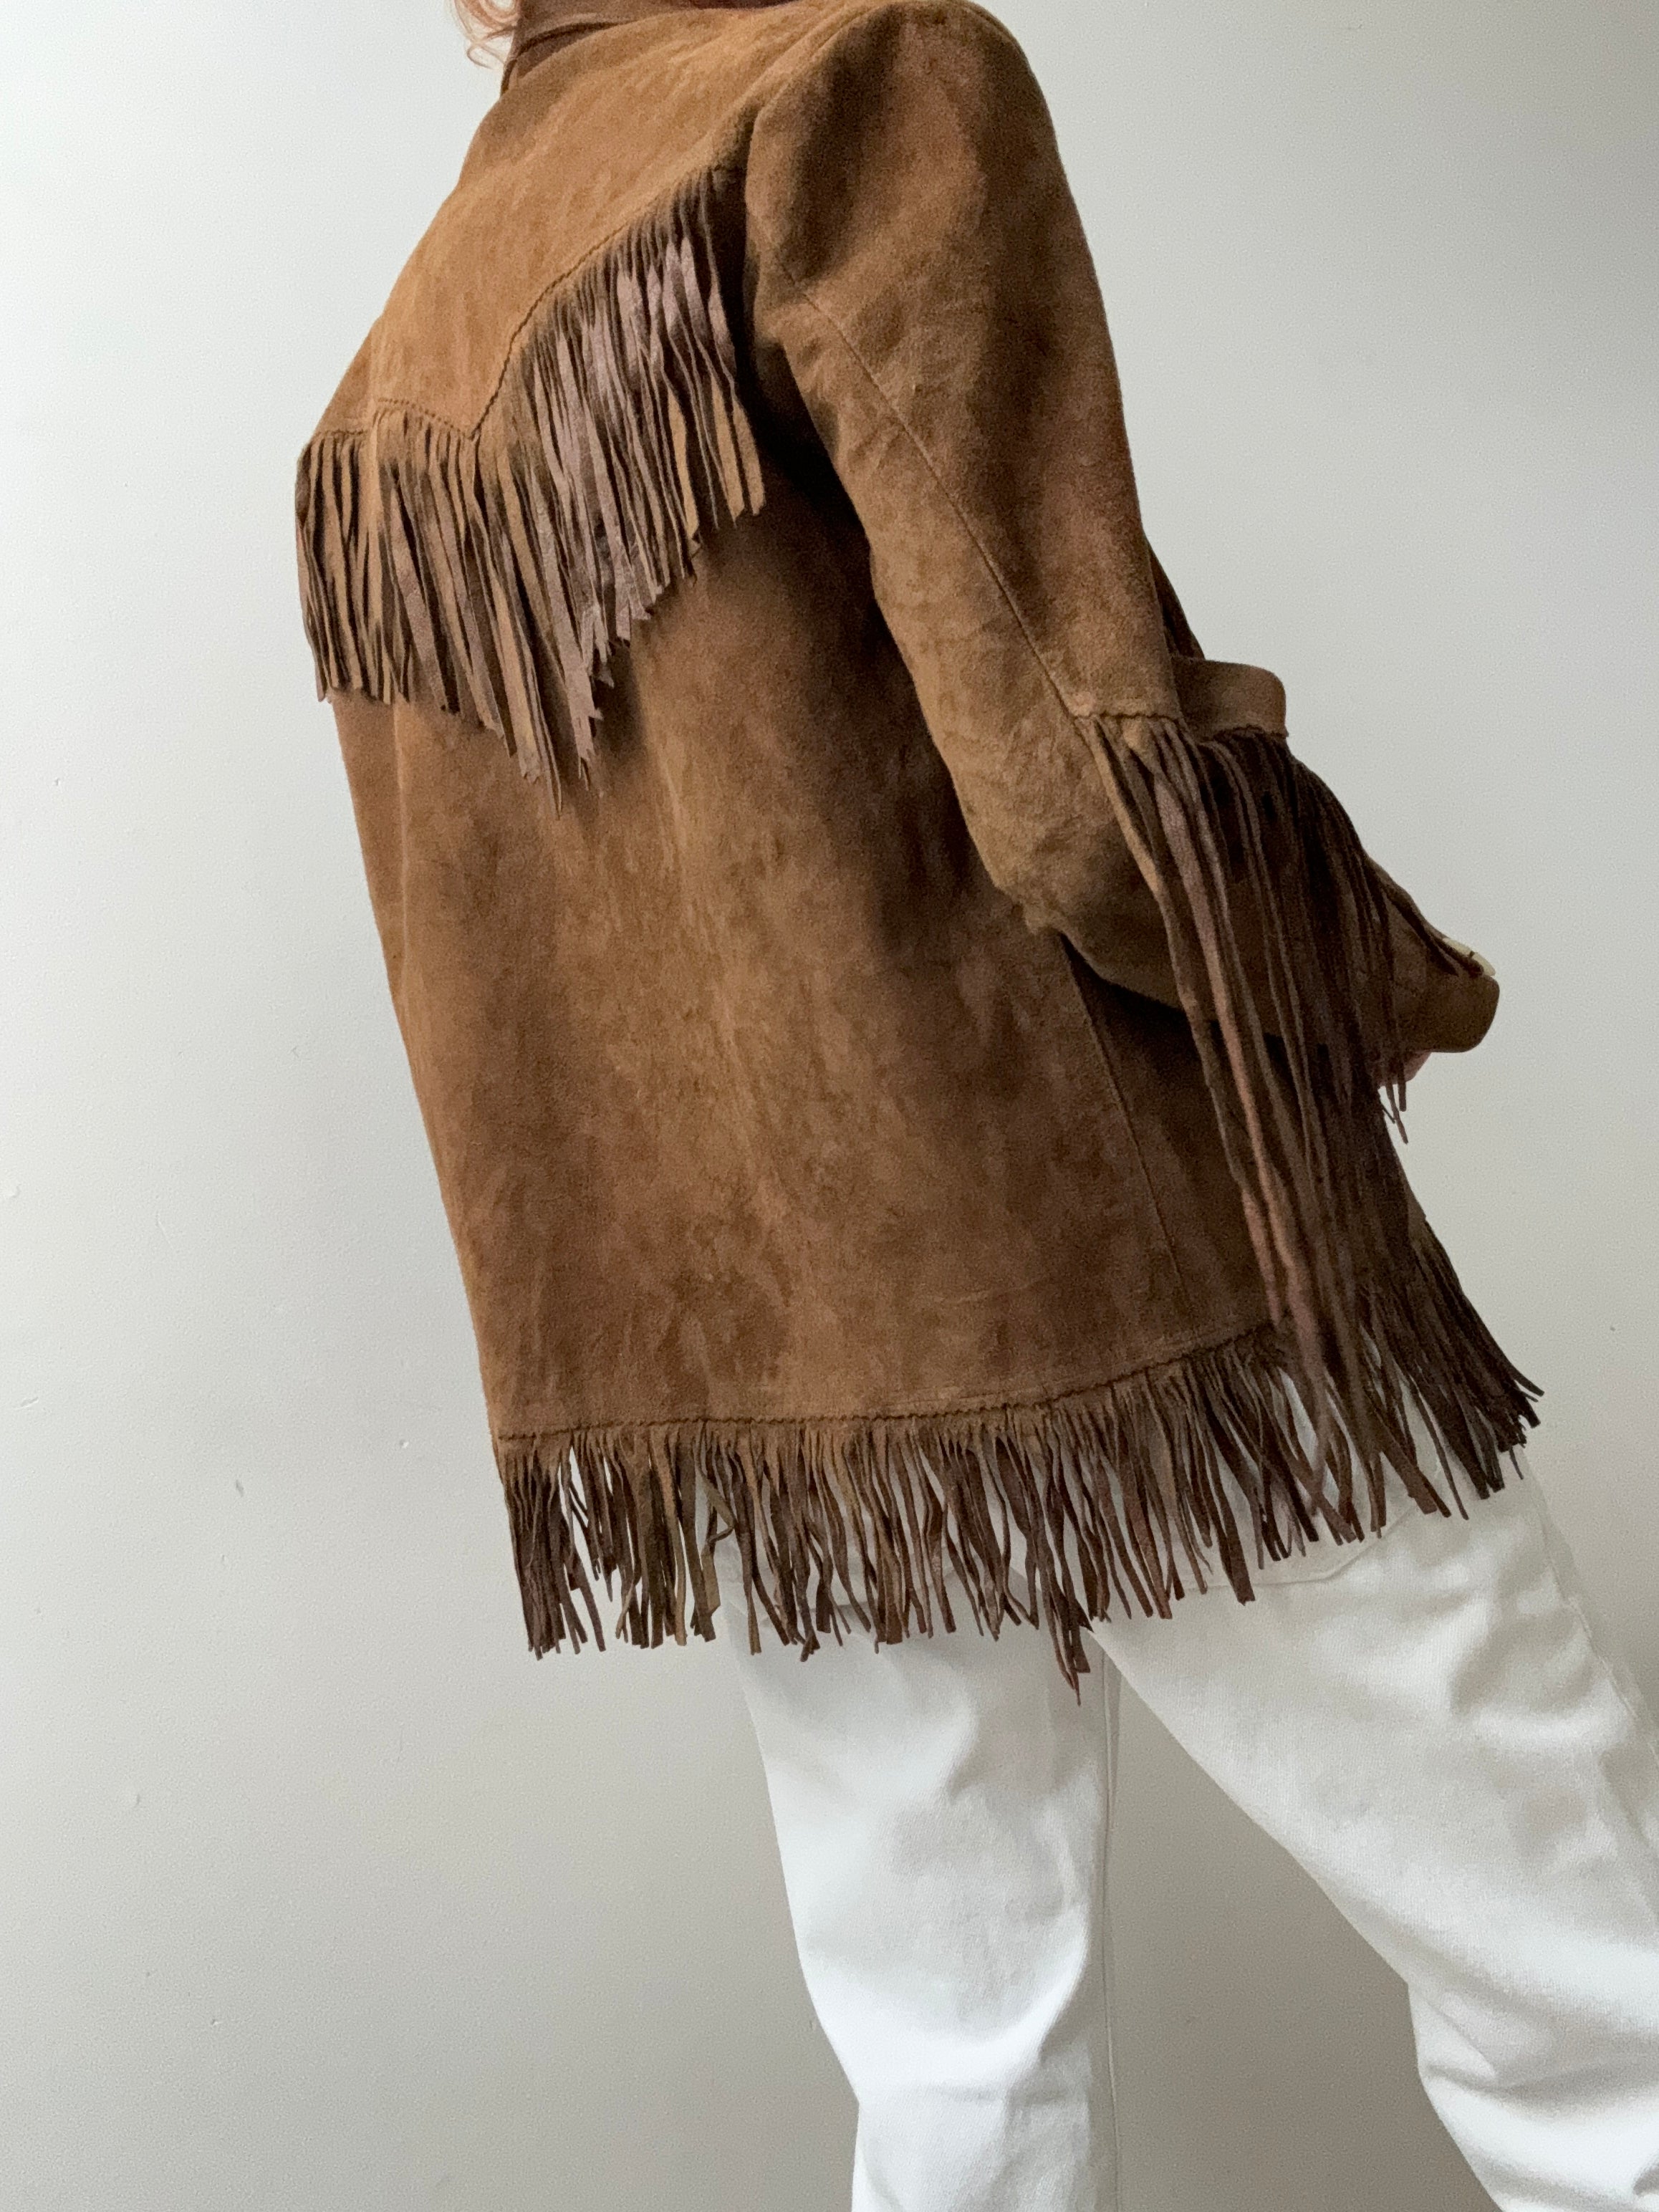 Future Nomads Jackets Small 70,s Vintage Tassel Jacket